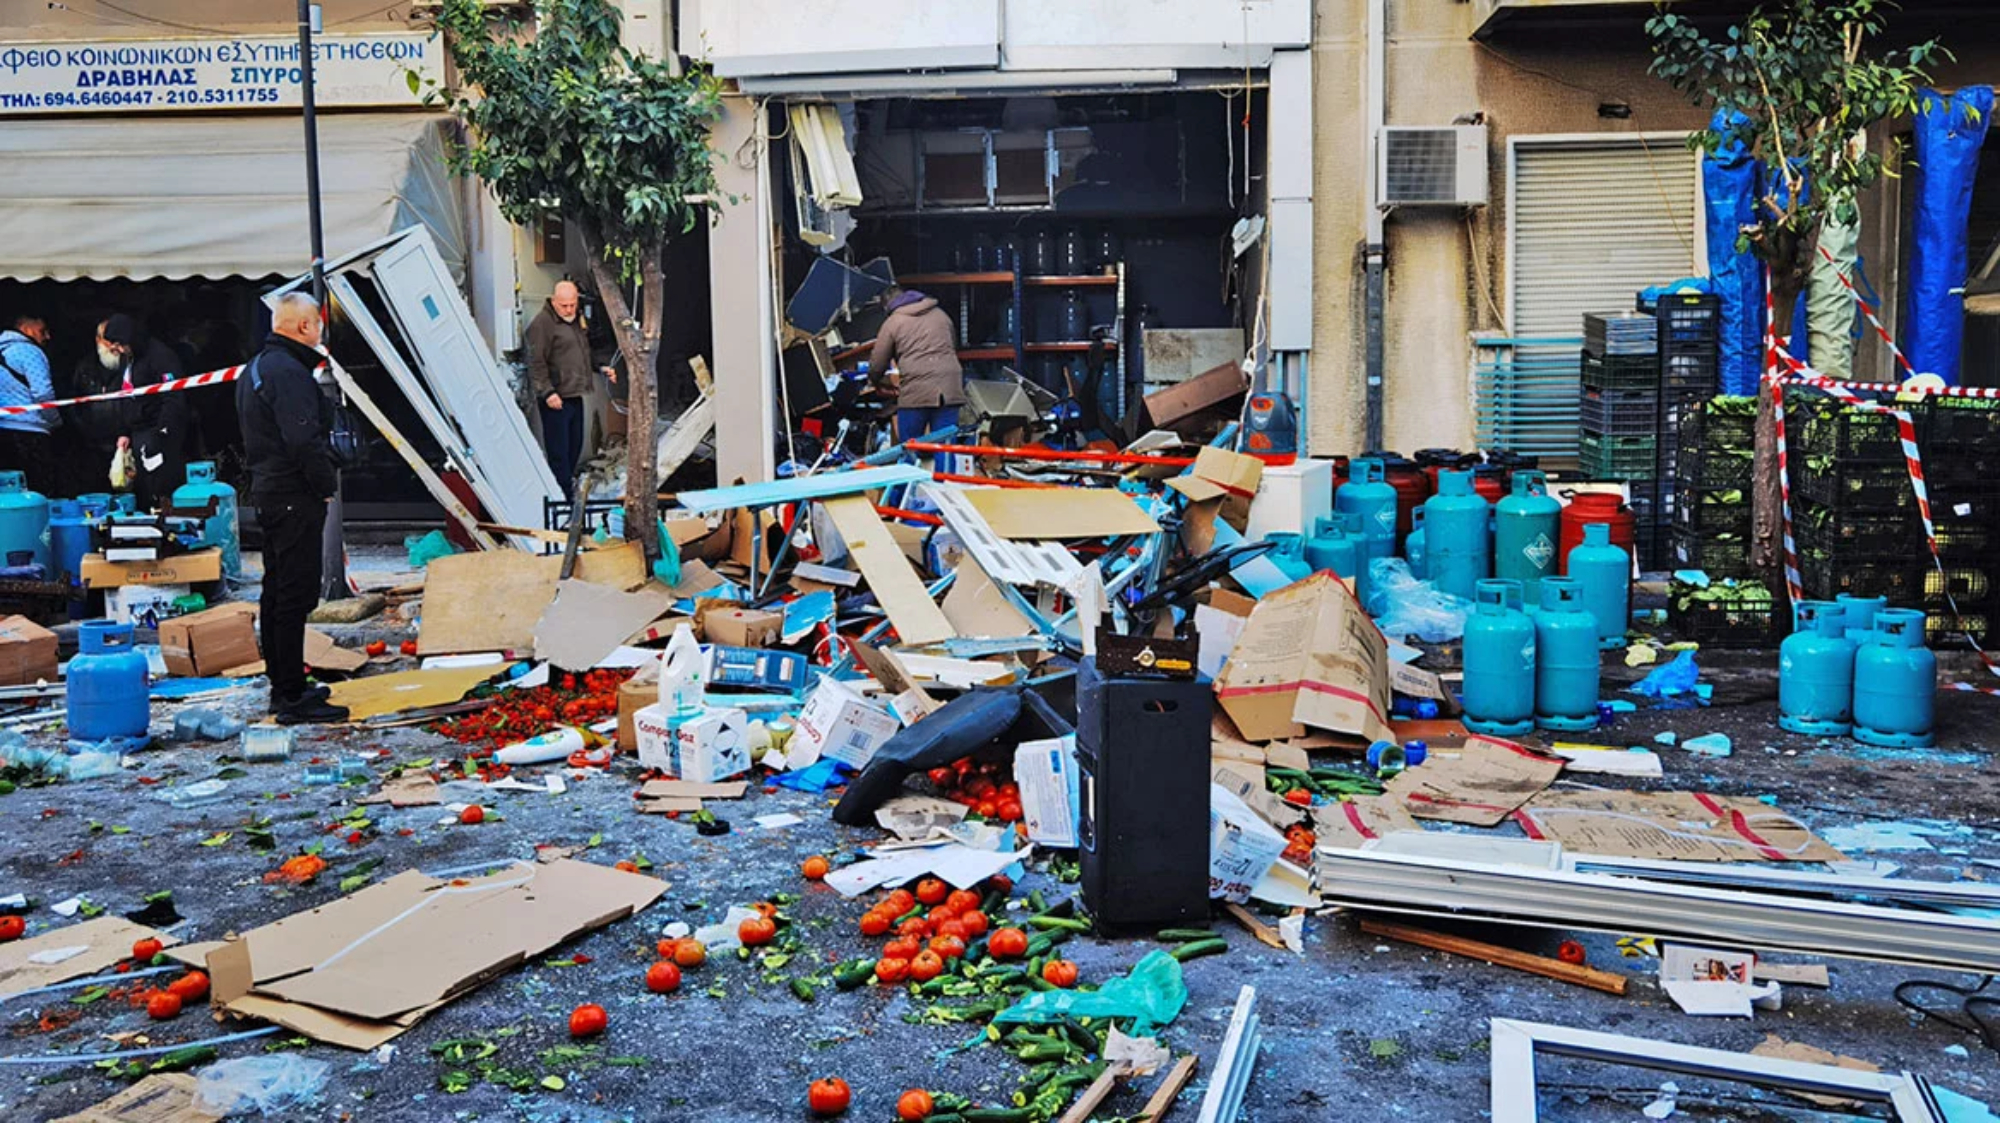 Αιγάλεω: Ισοπεδώθηκε κατάστημα με φιάλες υγραερίου μετά από έκρηξη - Δύο τραυματίες